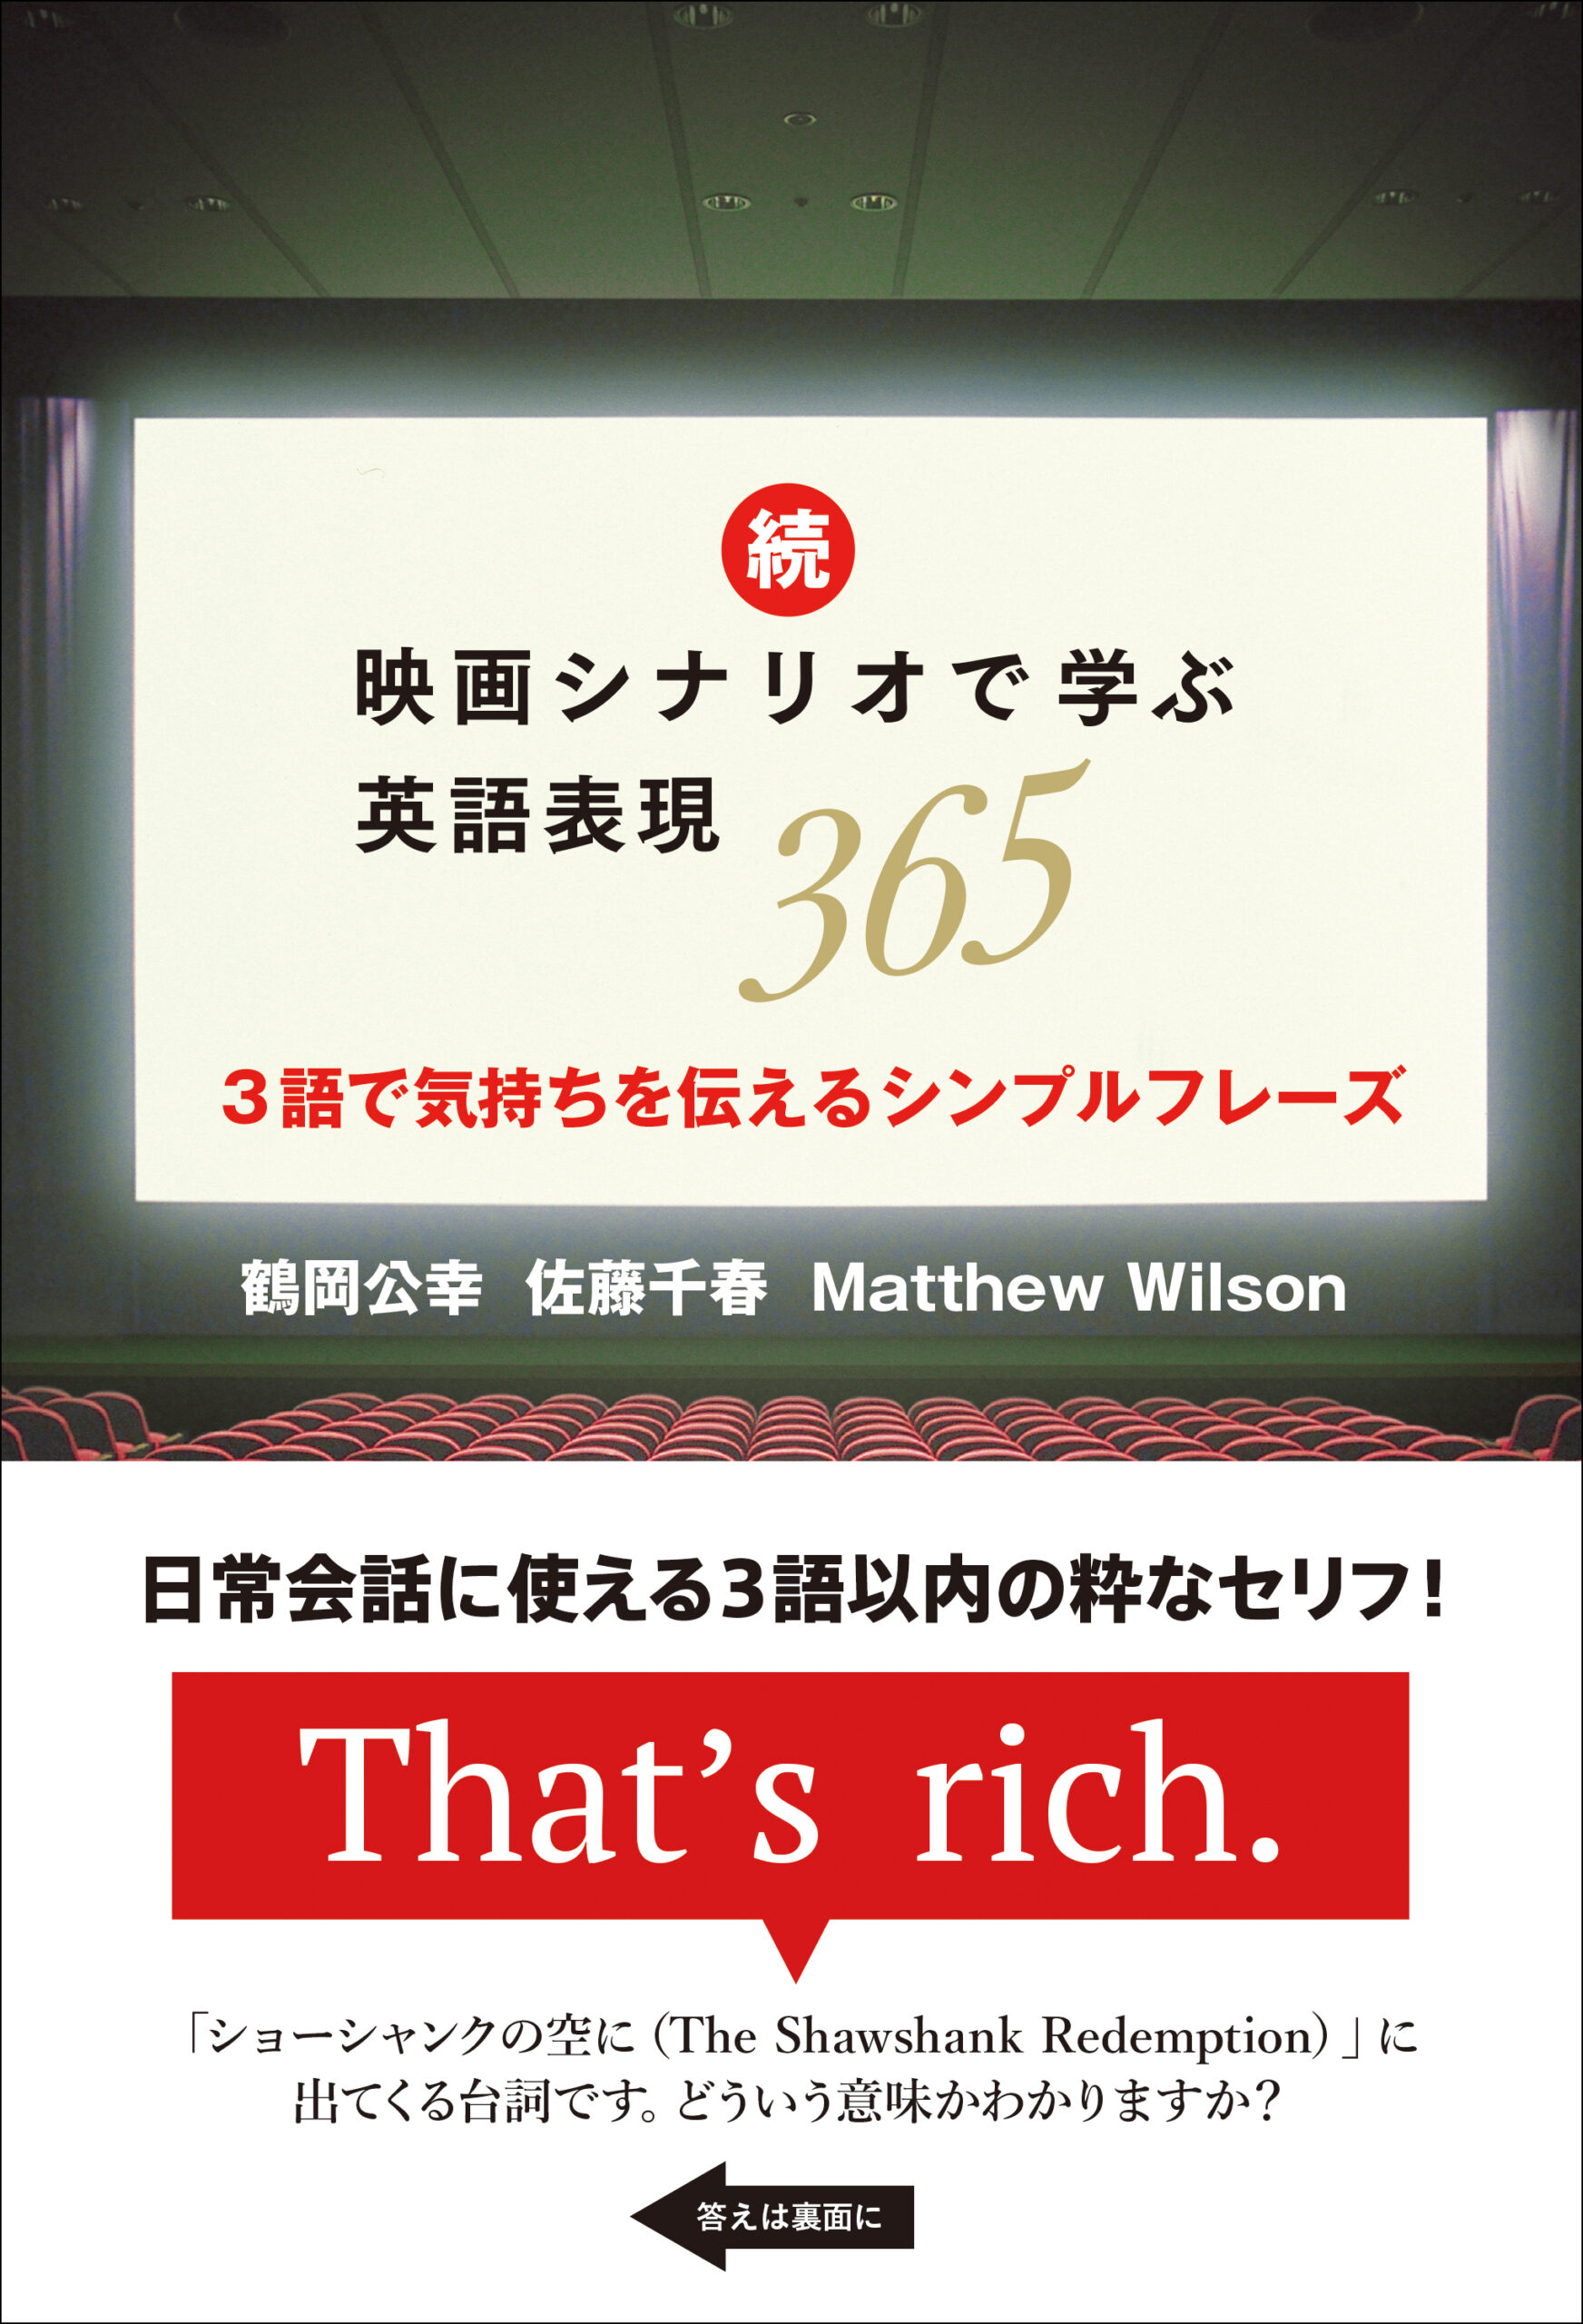 『続・映画シナリオで学ぶ英語表現365』鶴岡 公幸、佐藤 千春、Matthew Wilson (著)